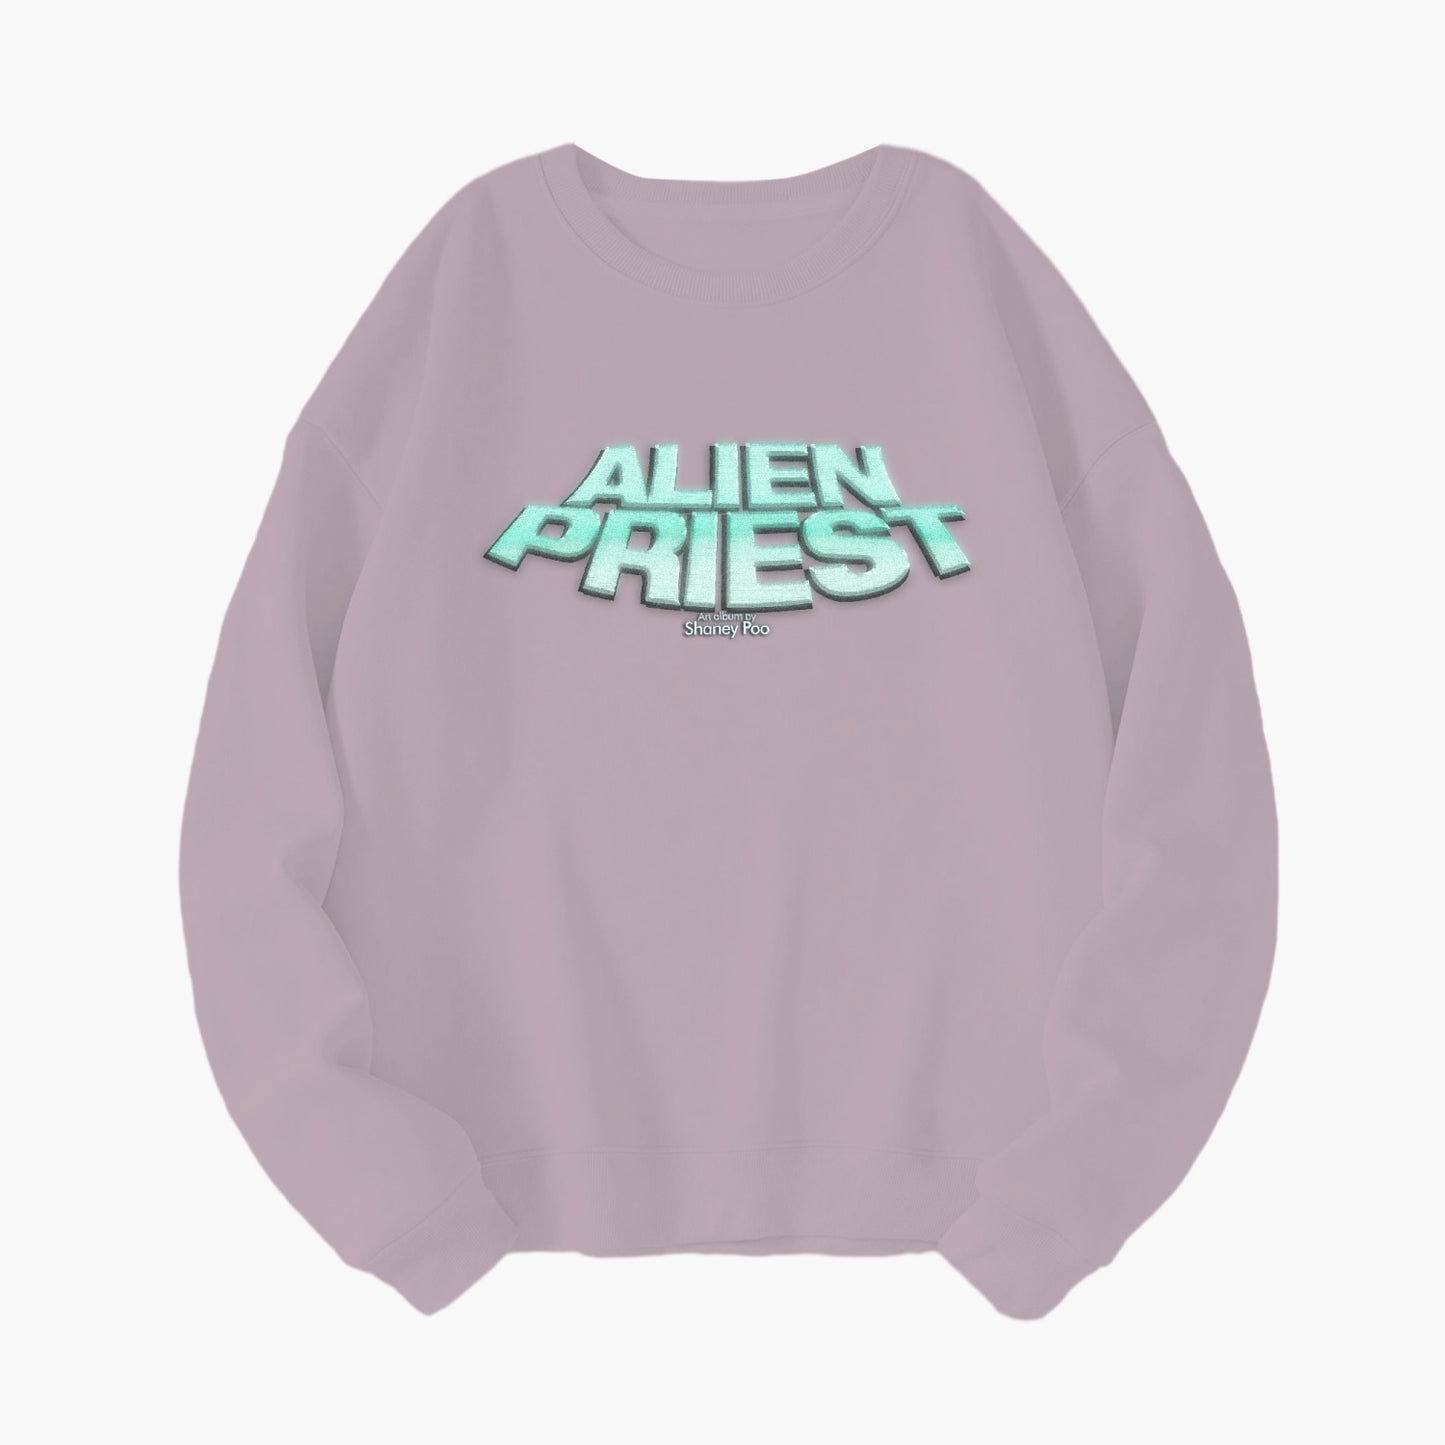 2. Alien Priest Crewneck Sweater